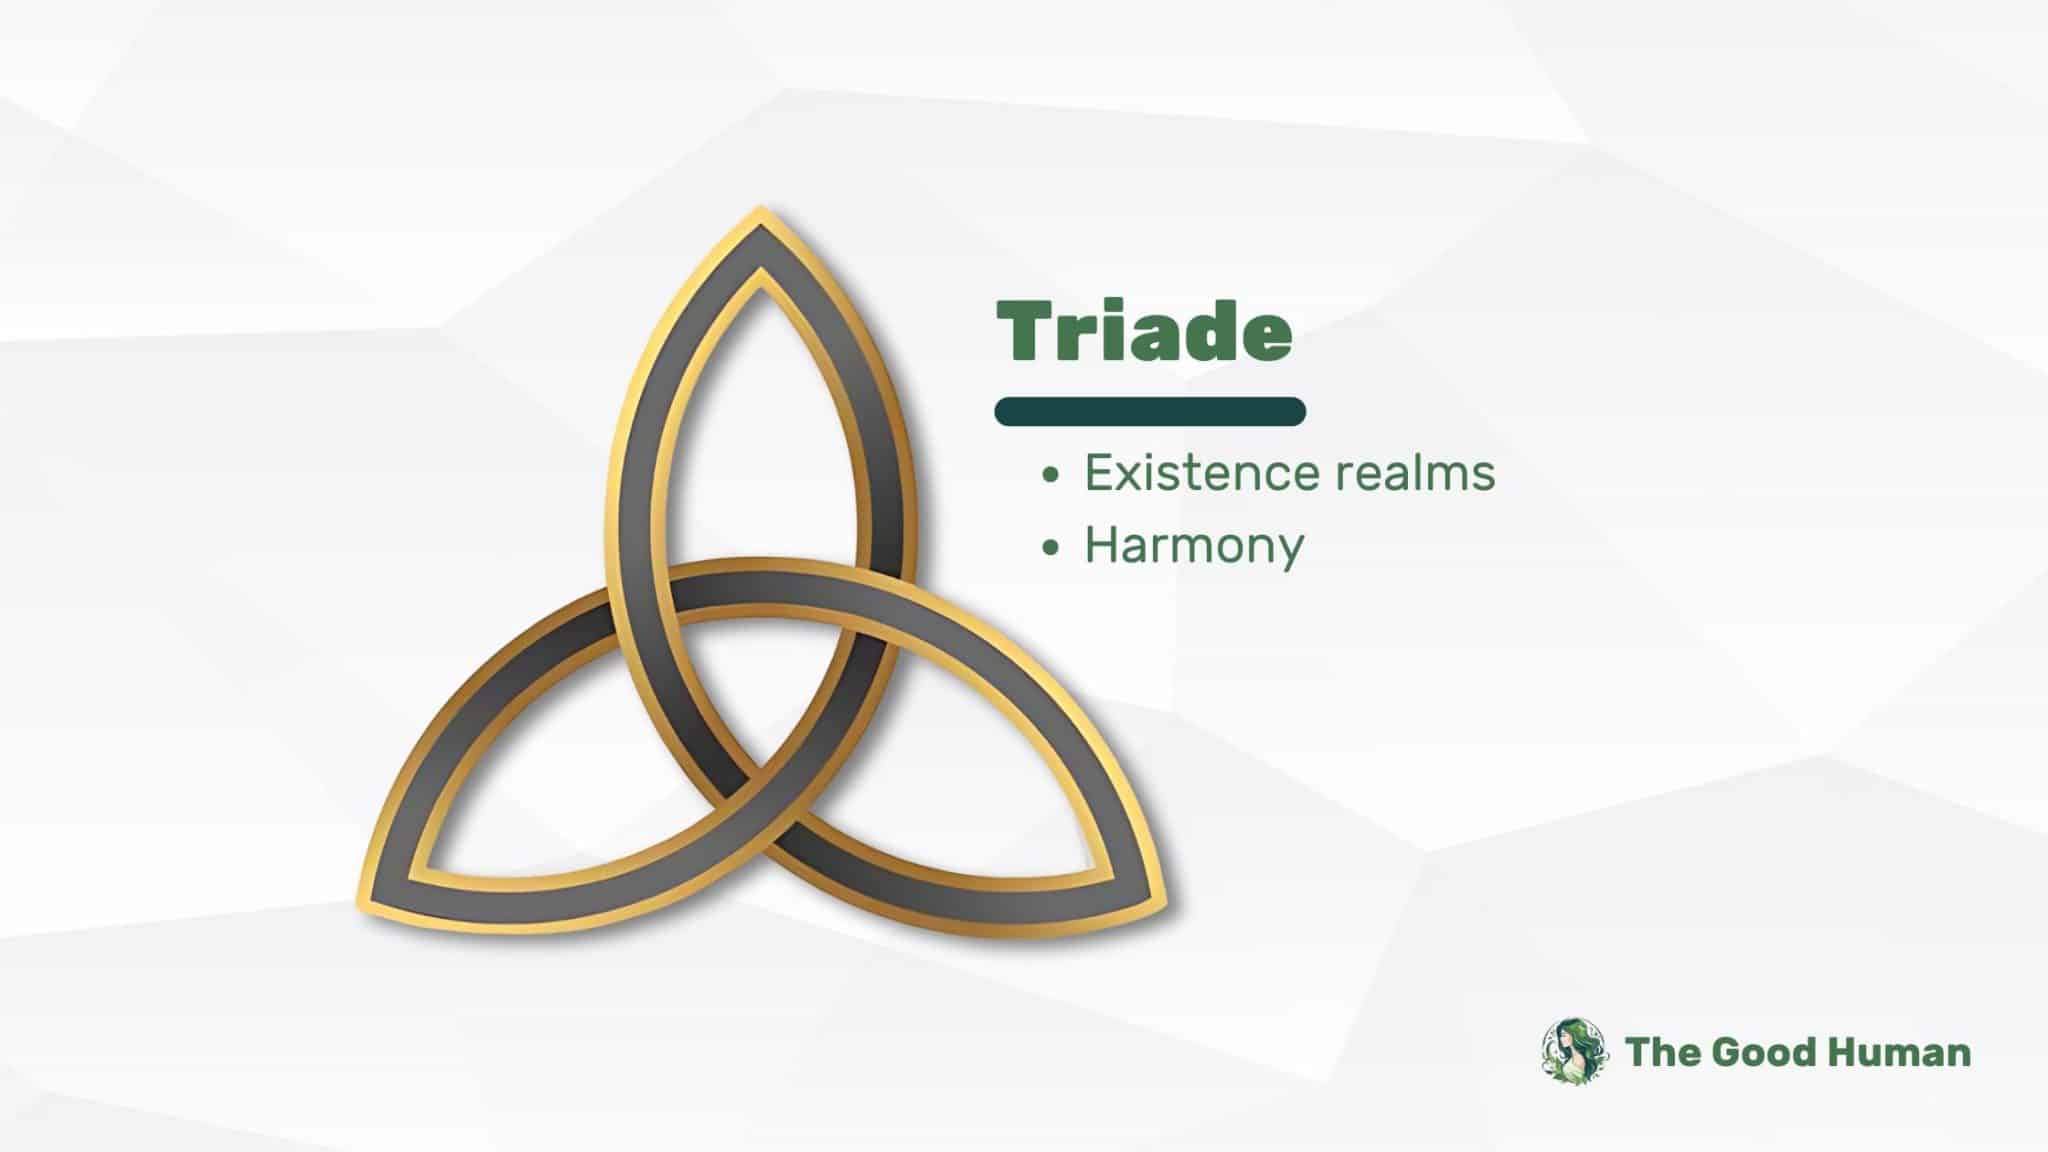 Triade symbol